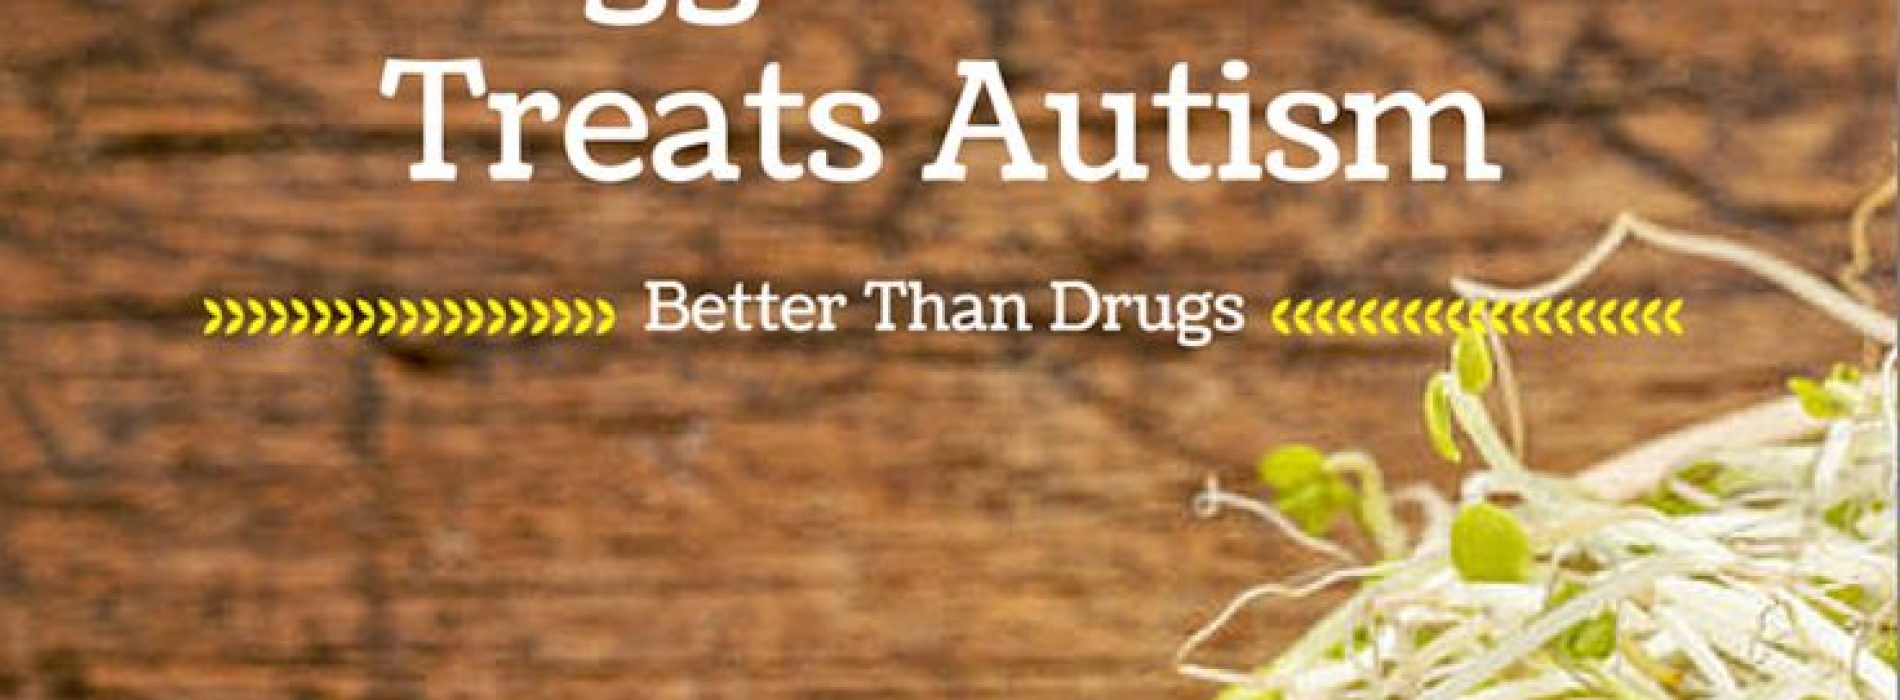 Groente-extract helpt beter tegen autisme dan medicijnen